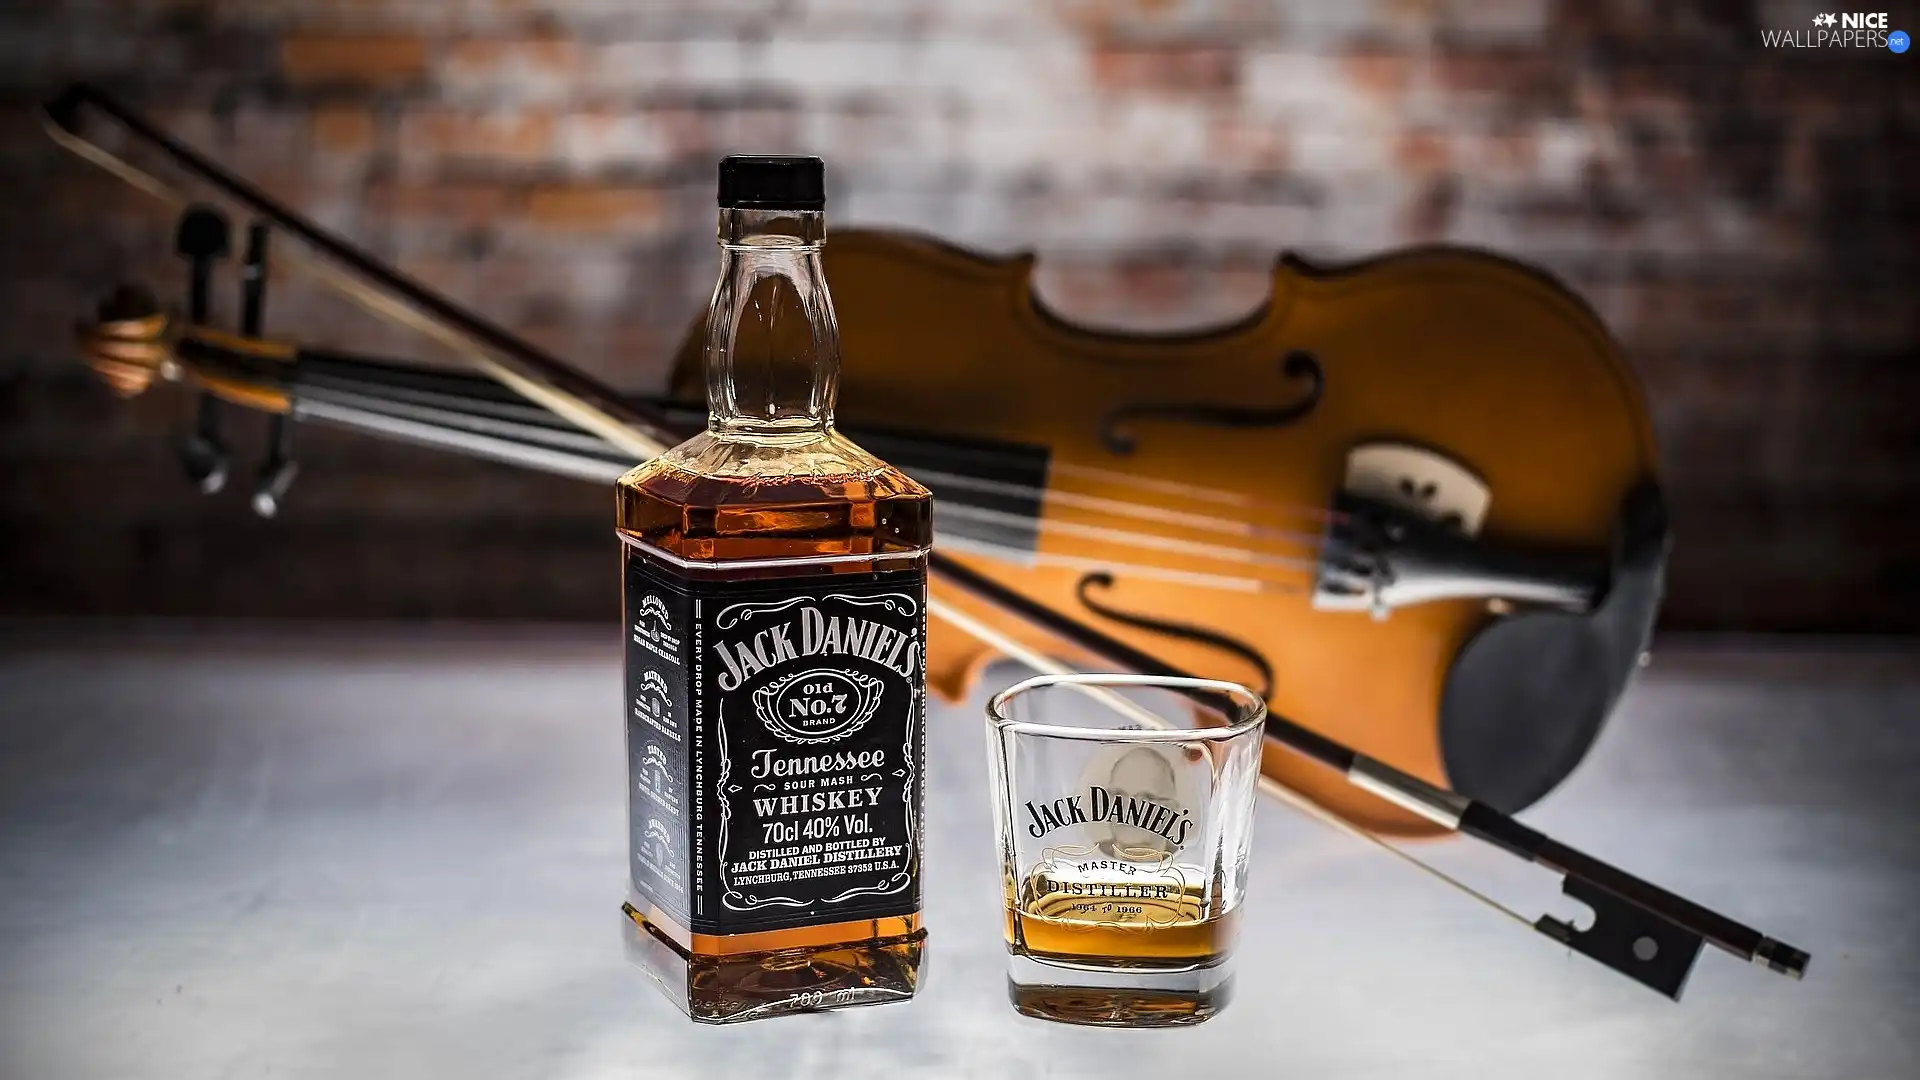 cup, violin, Jack Daniels, Bottle, Whisky